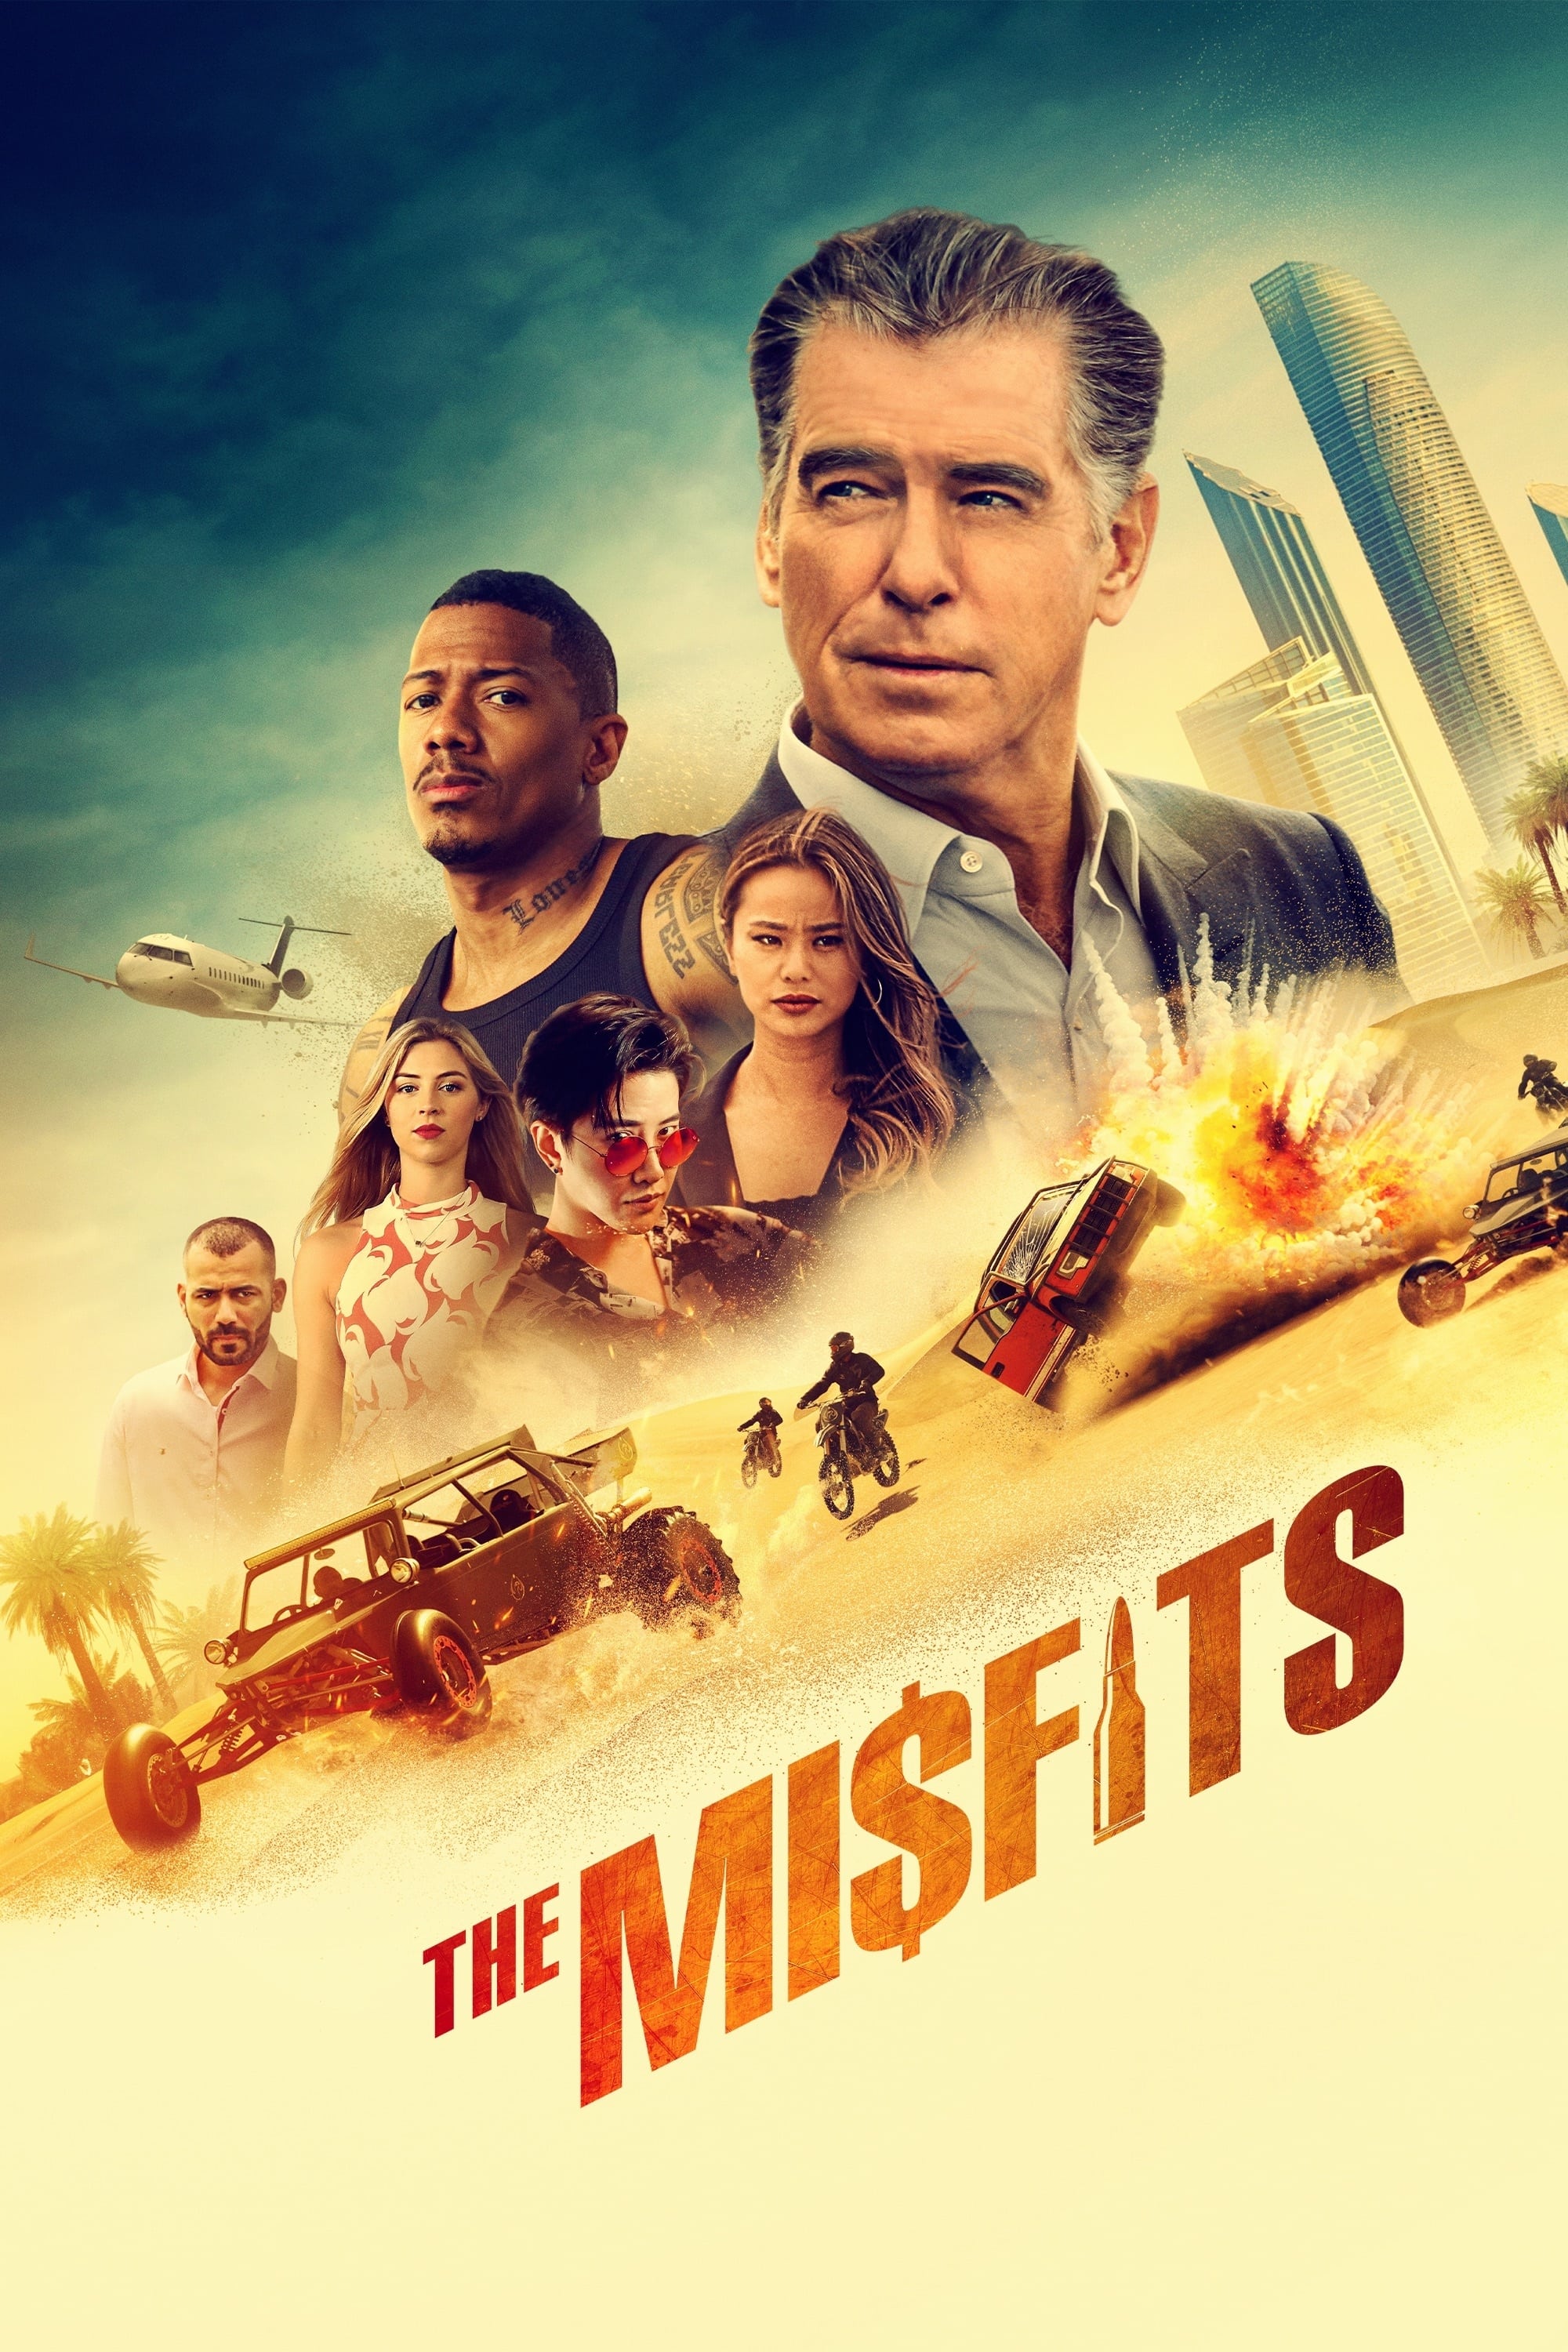 Những Kẻ Dị Thường - The Misfits (2021)